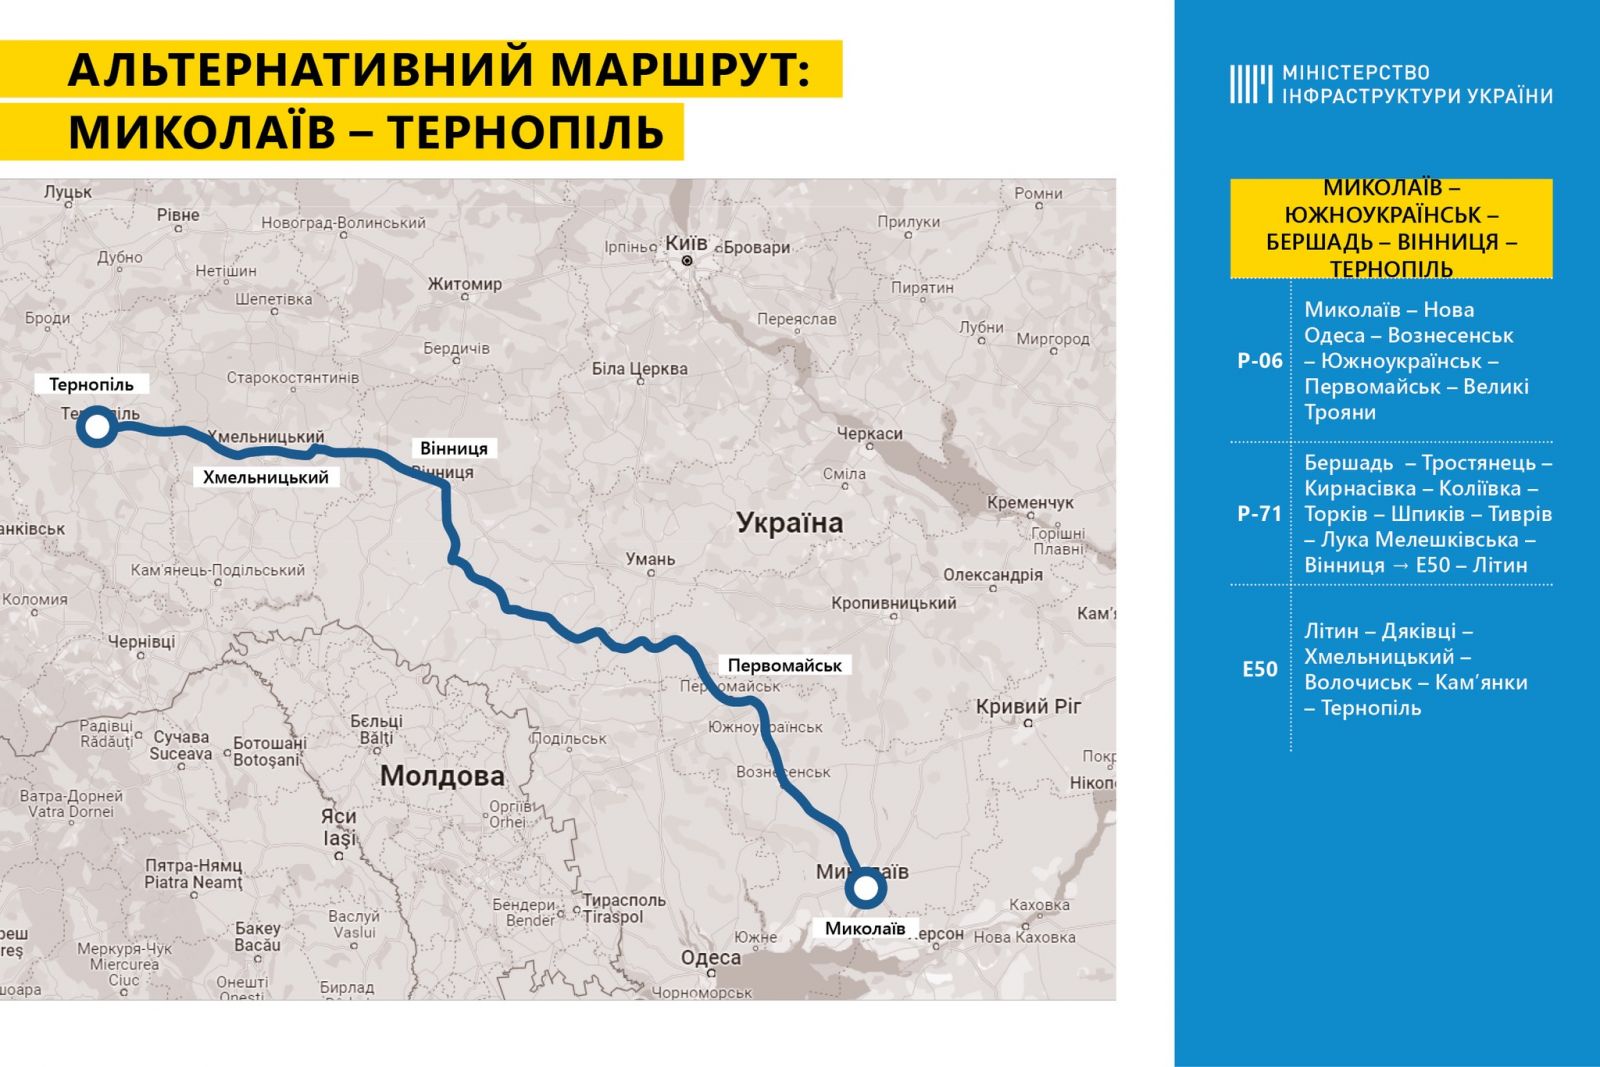 Альтернативні маршрути. Карта: Міністерство інфраструктури України